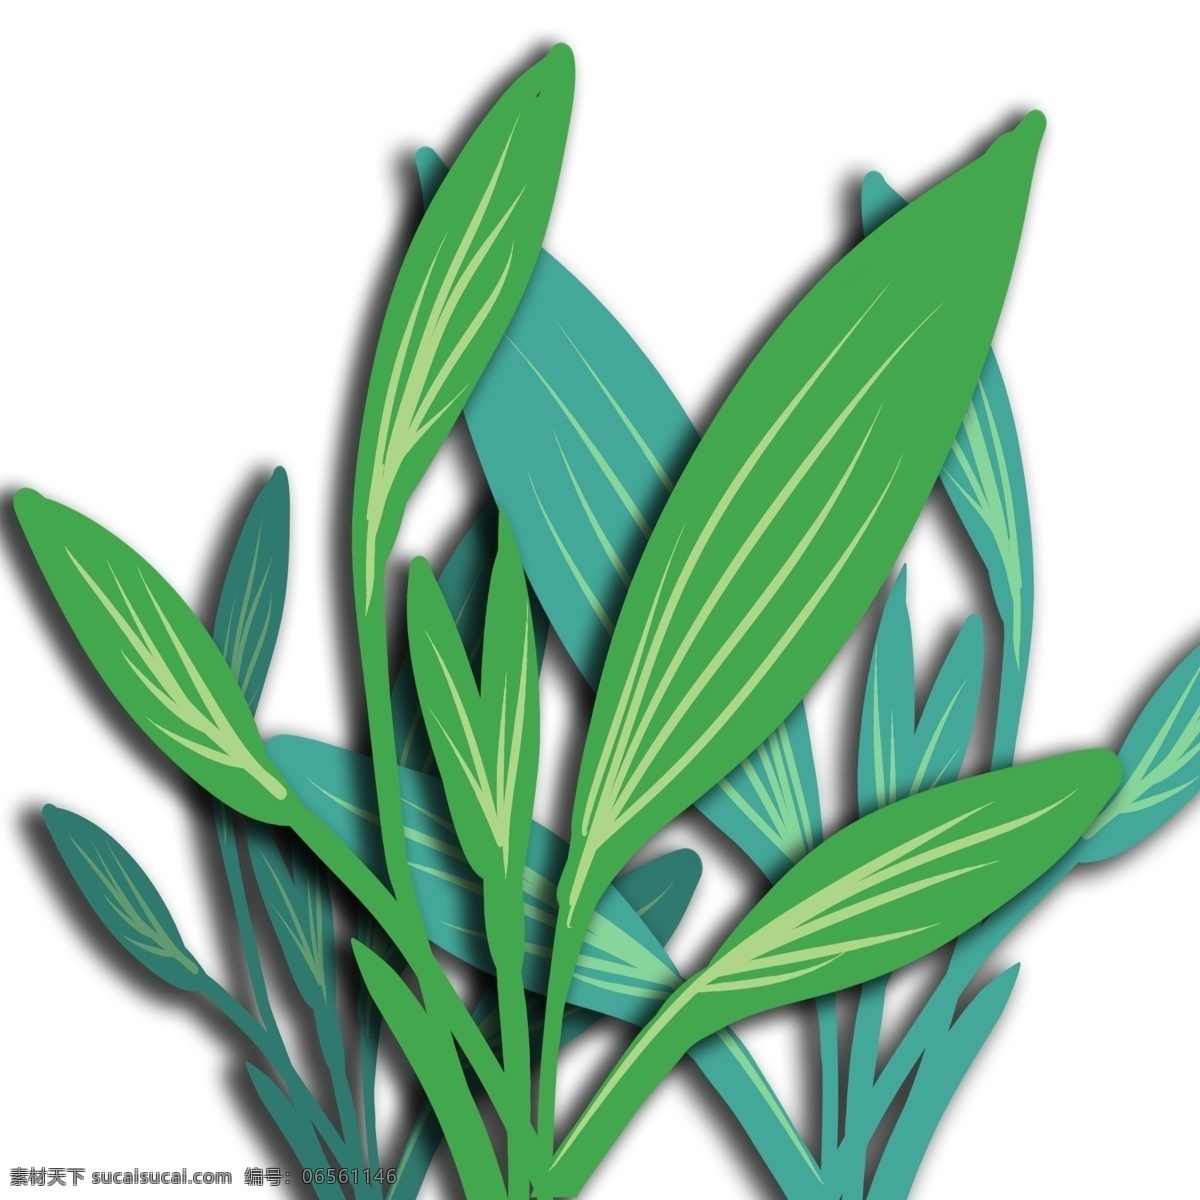 立体 纸艺 植物 免 扣 立体纸艺 绿色叶子 绿色 浮雕纸艺 立体浮雕纸艺 植物浮雕效果 背景 自然 简约